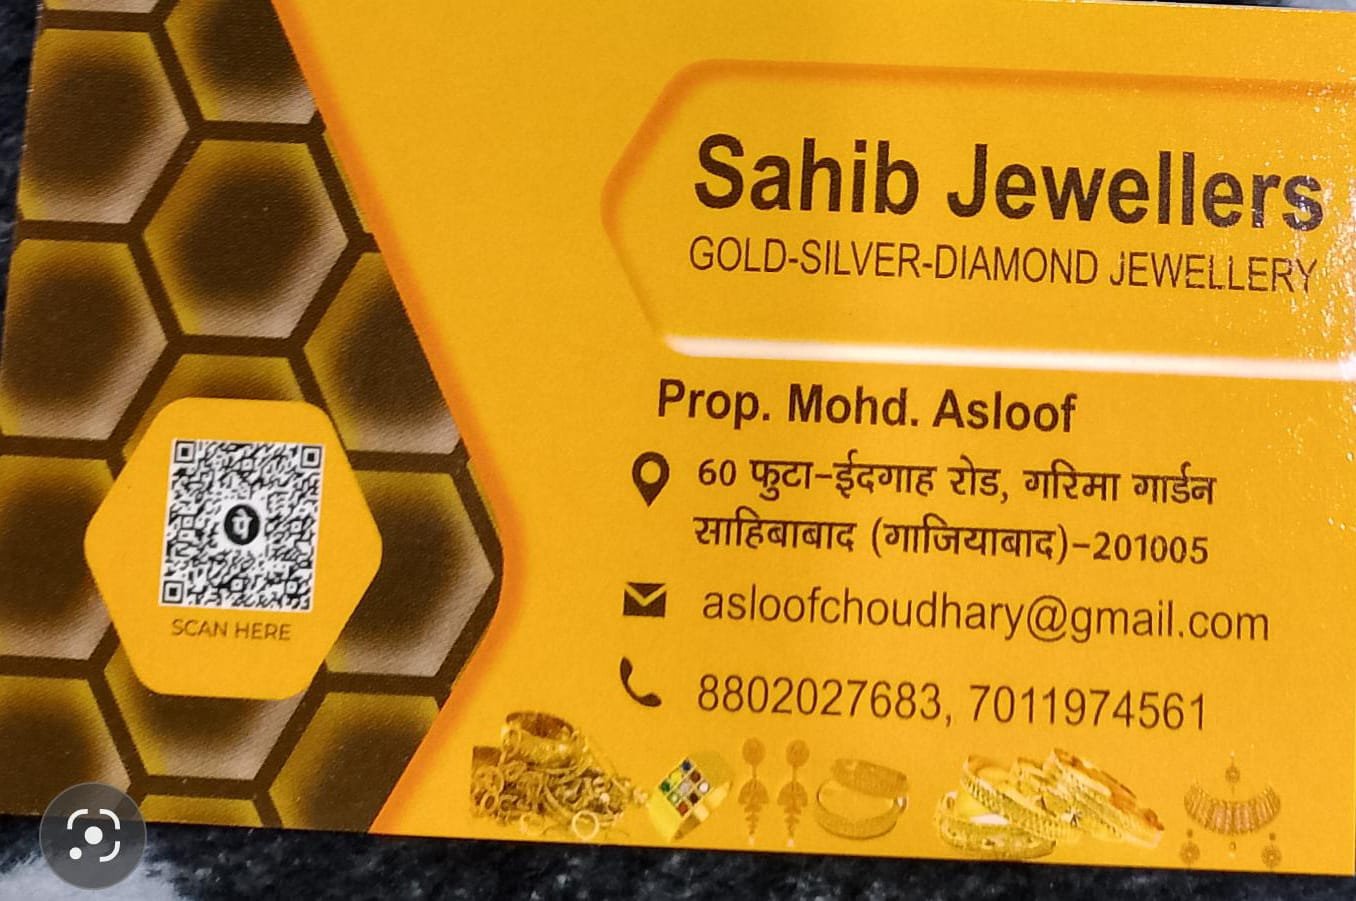 Sahib Jewellers